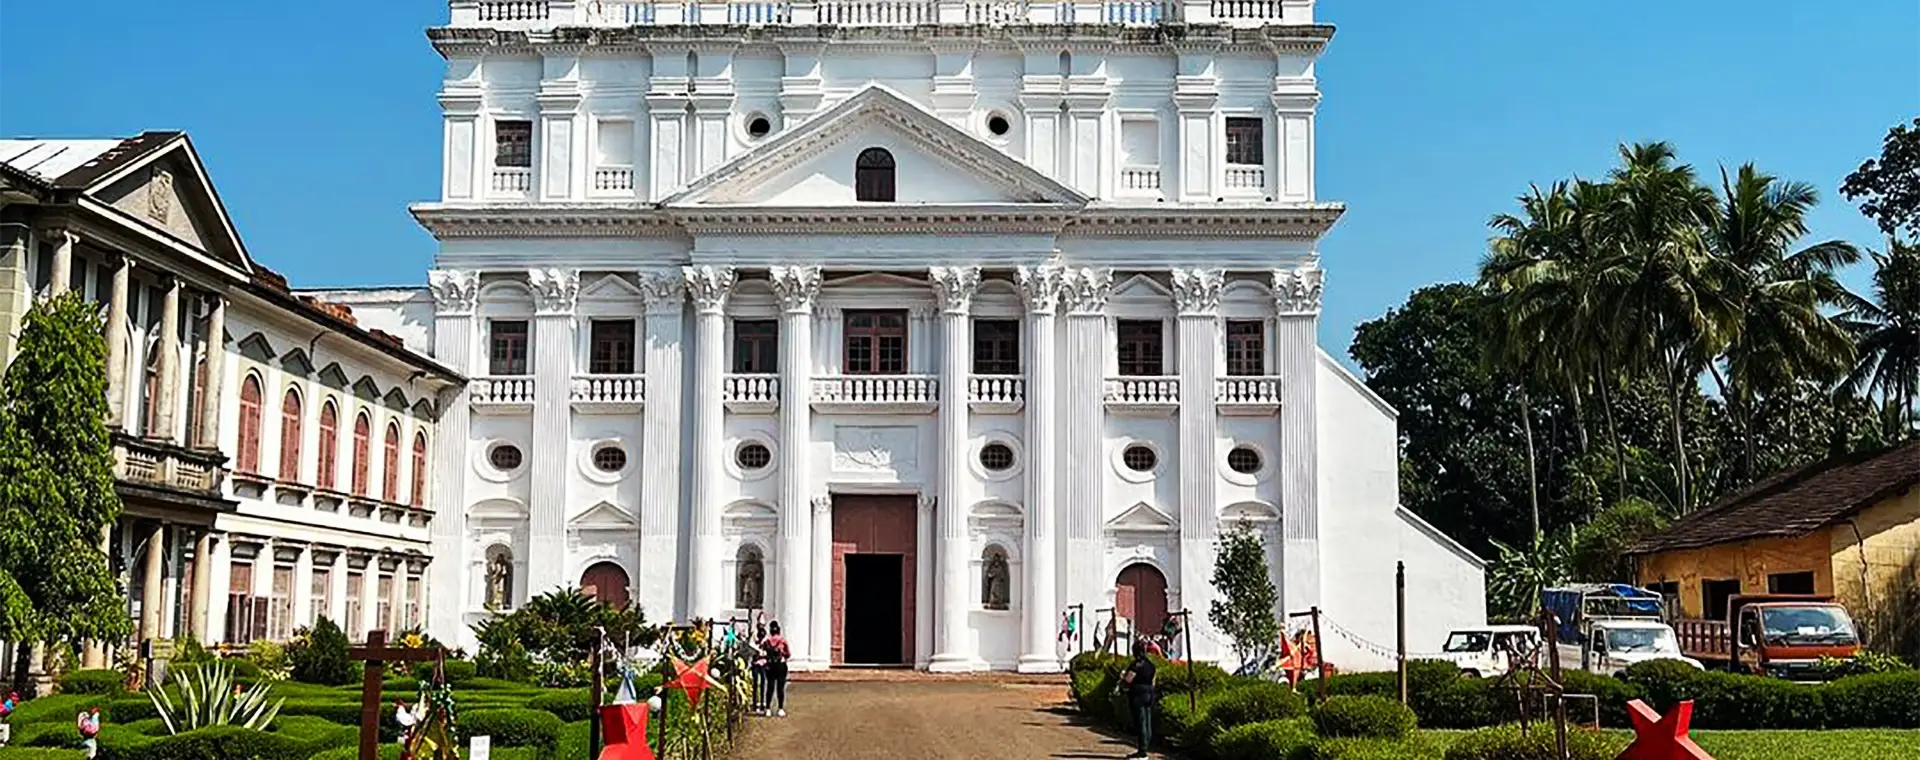 Church of St. Cajetan Goa